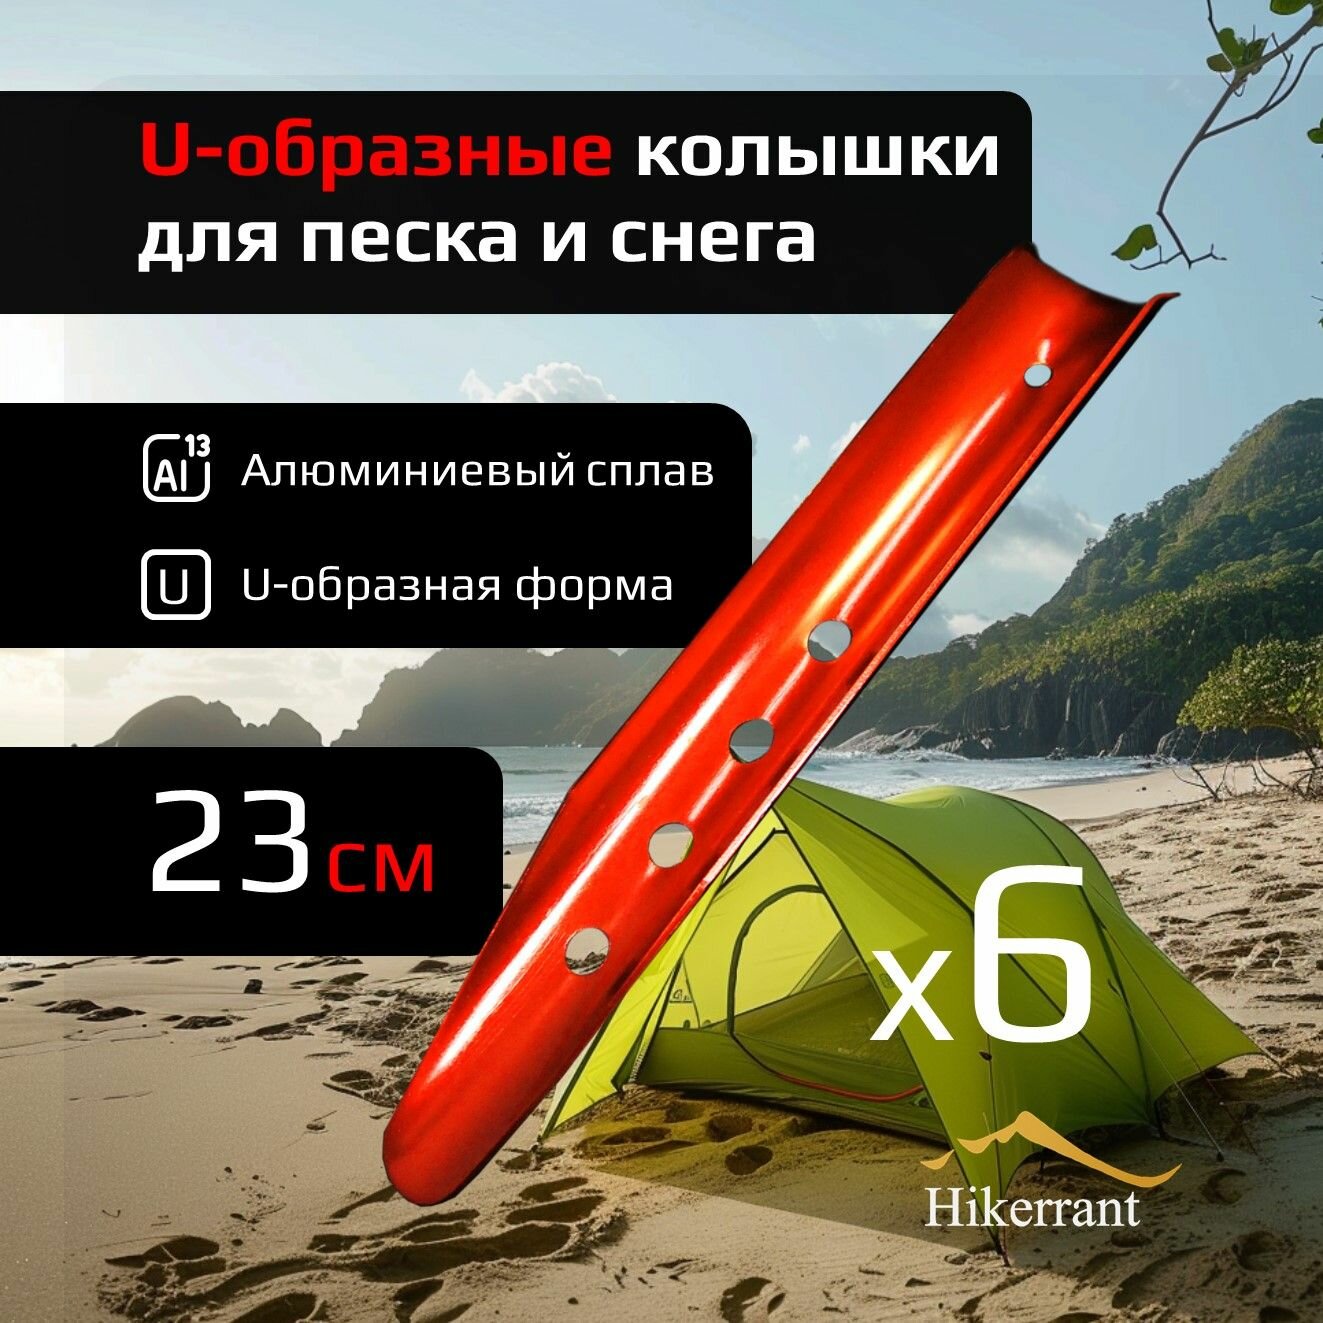 U-образные колышки для палатки алюминиевые 23 см 6шт для песка и снега металлические. Цвет Оранжевый